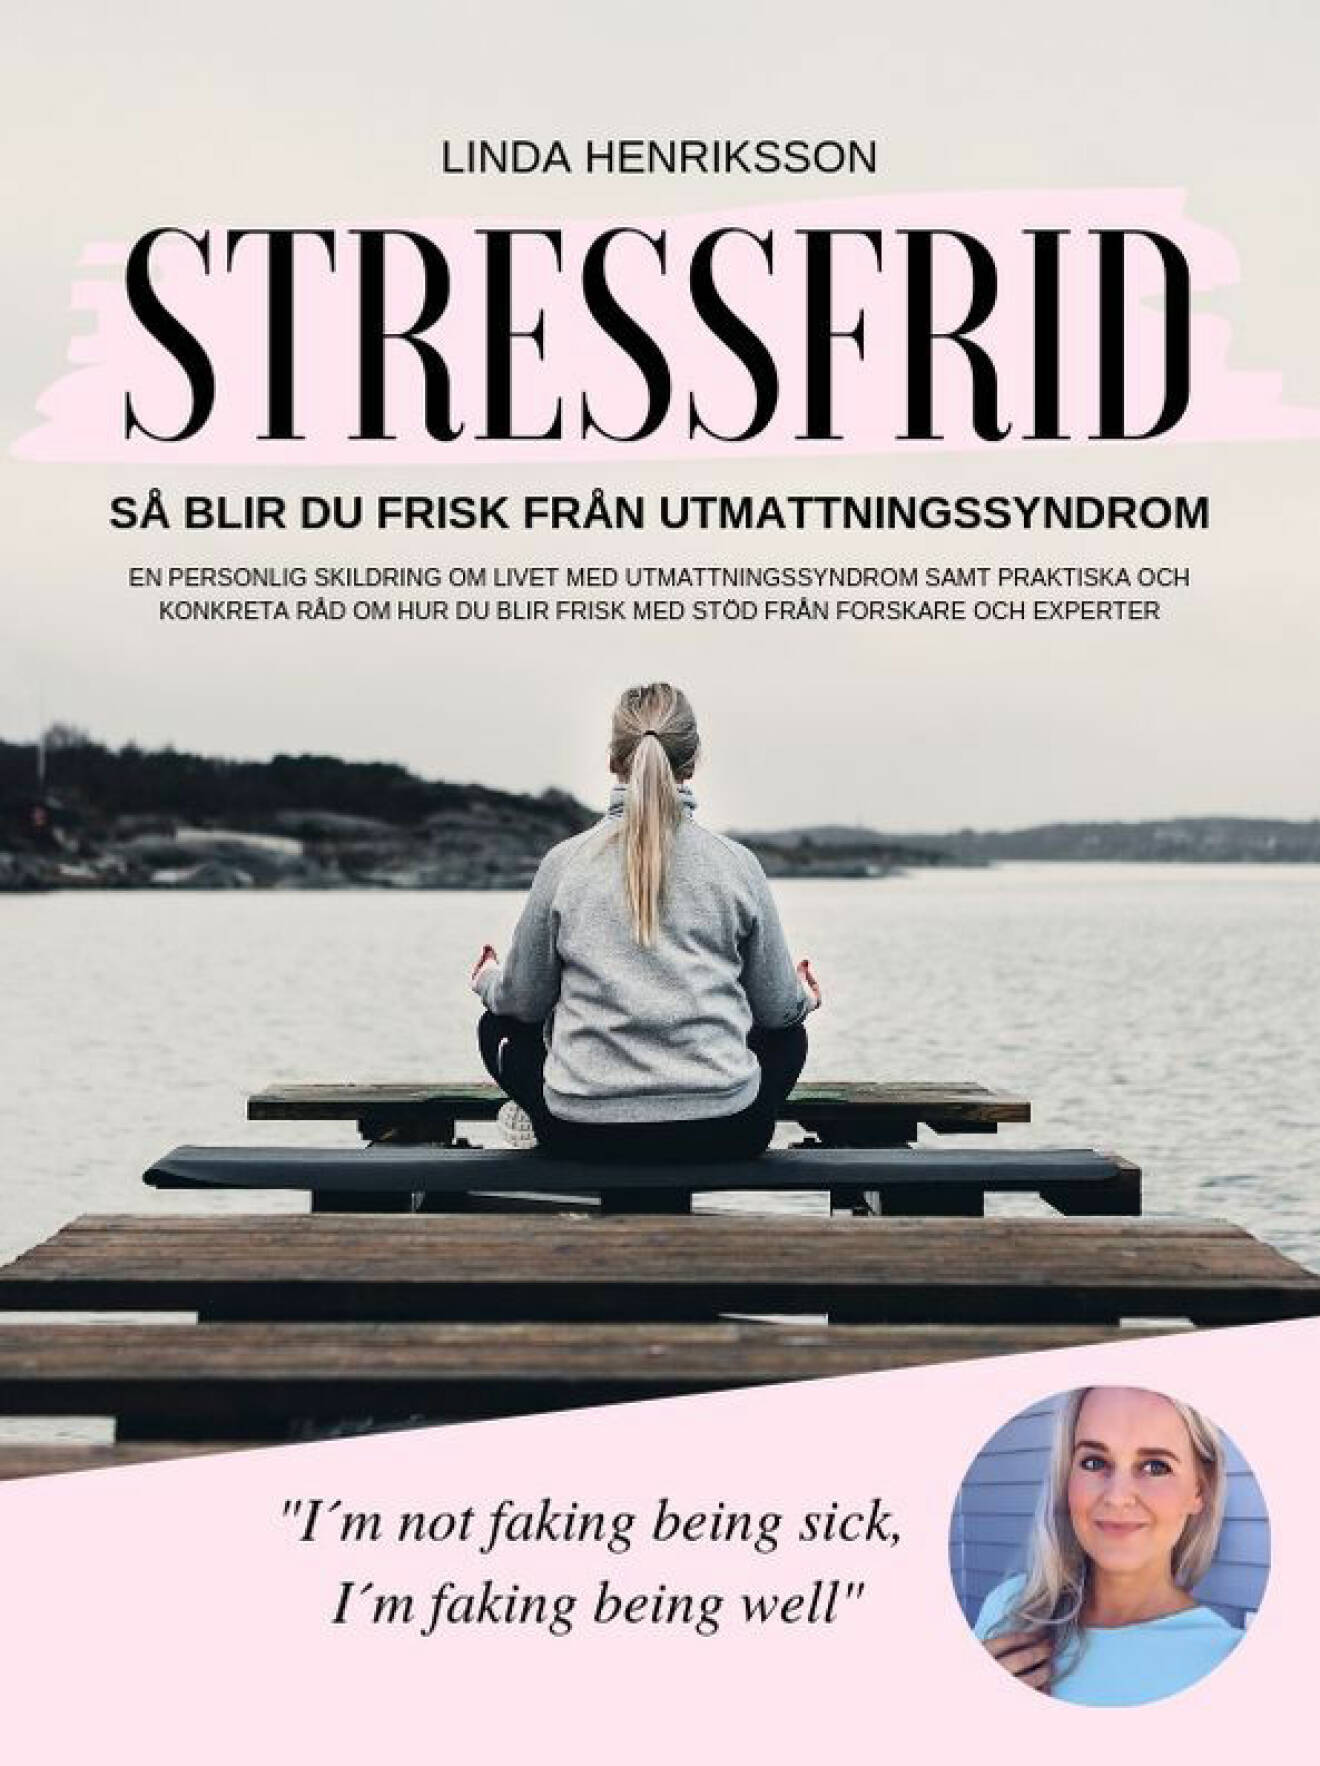 Omslag Stressfrid av Linda Henriksson.